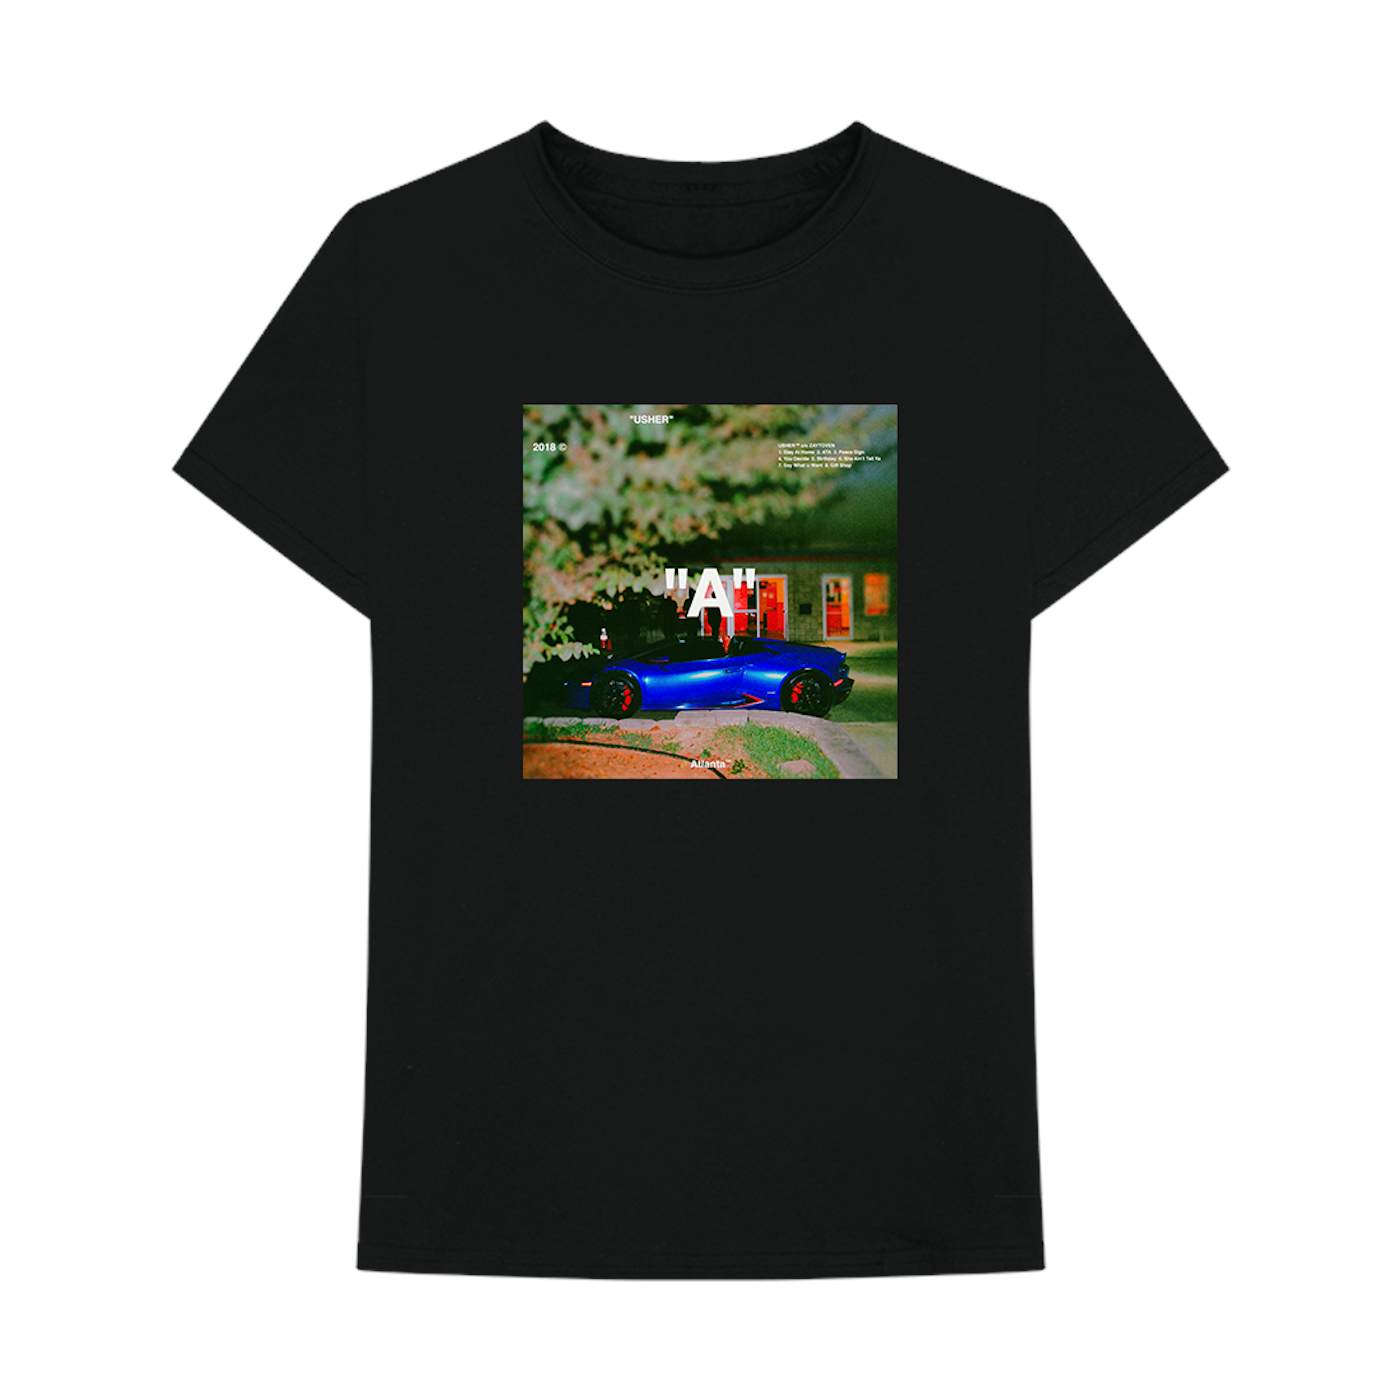 USHER "A" T-Shirt + Digital